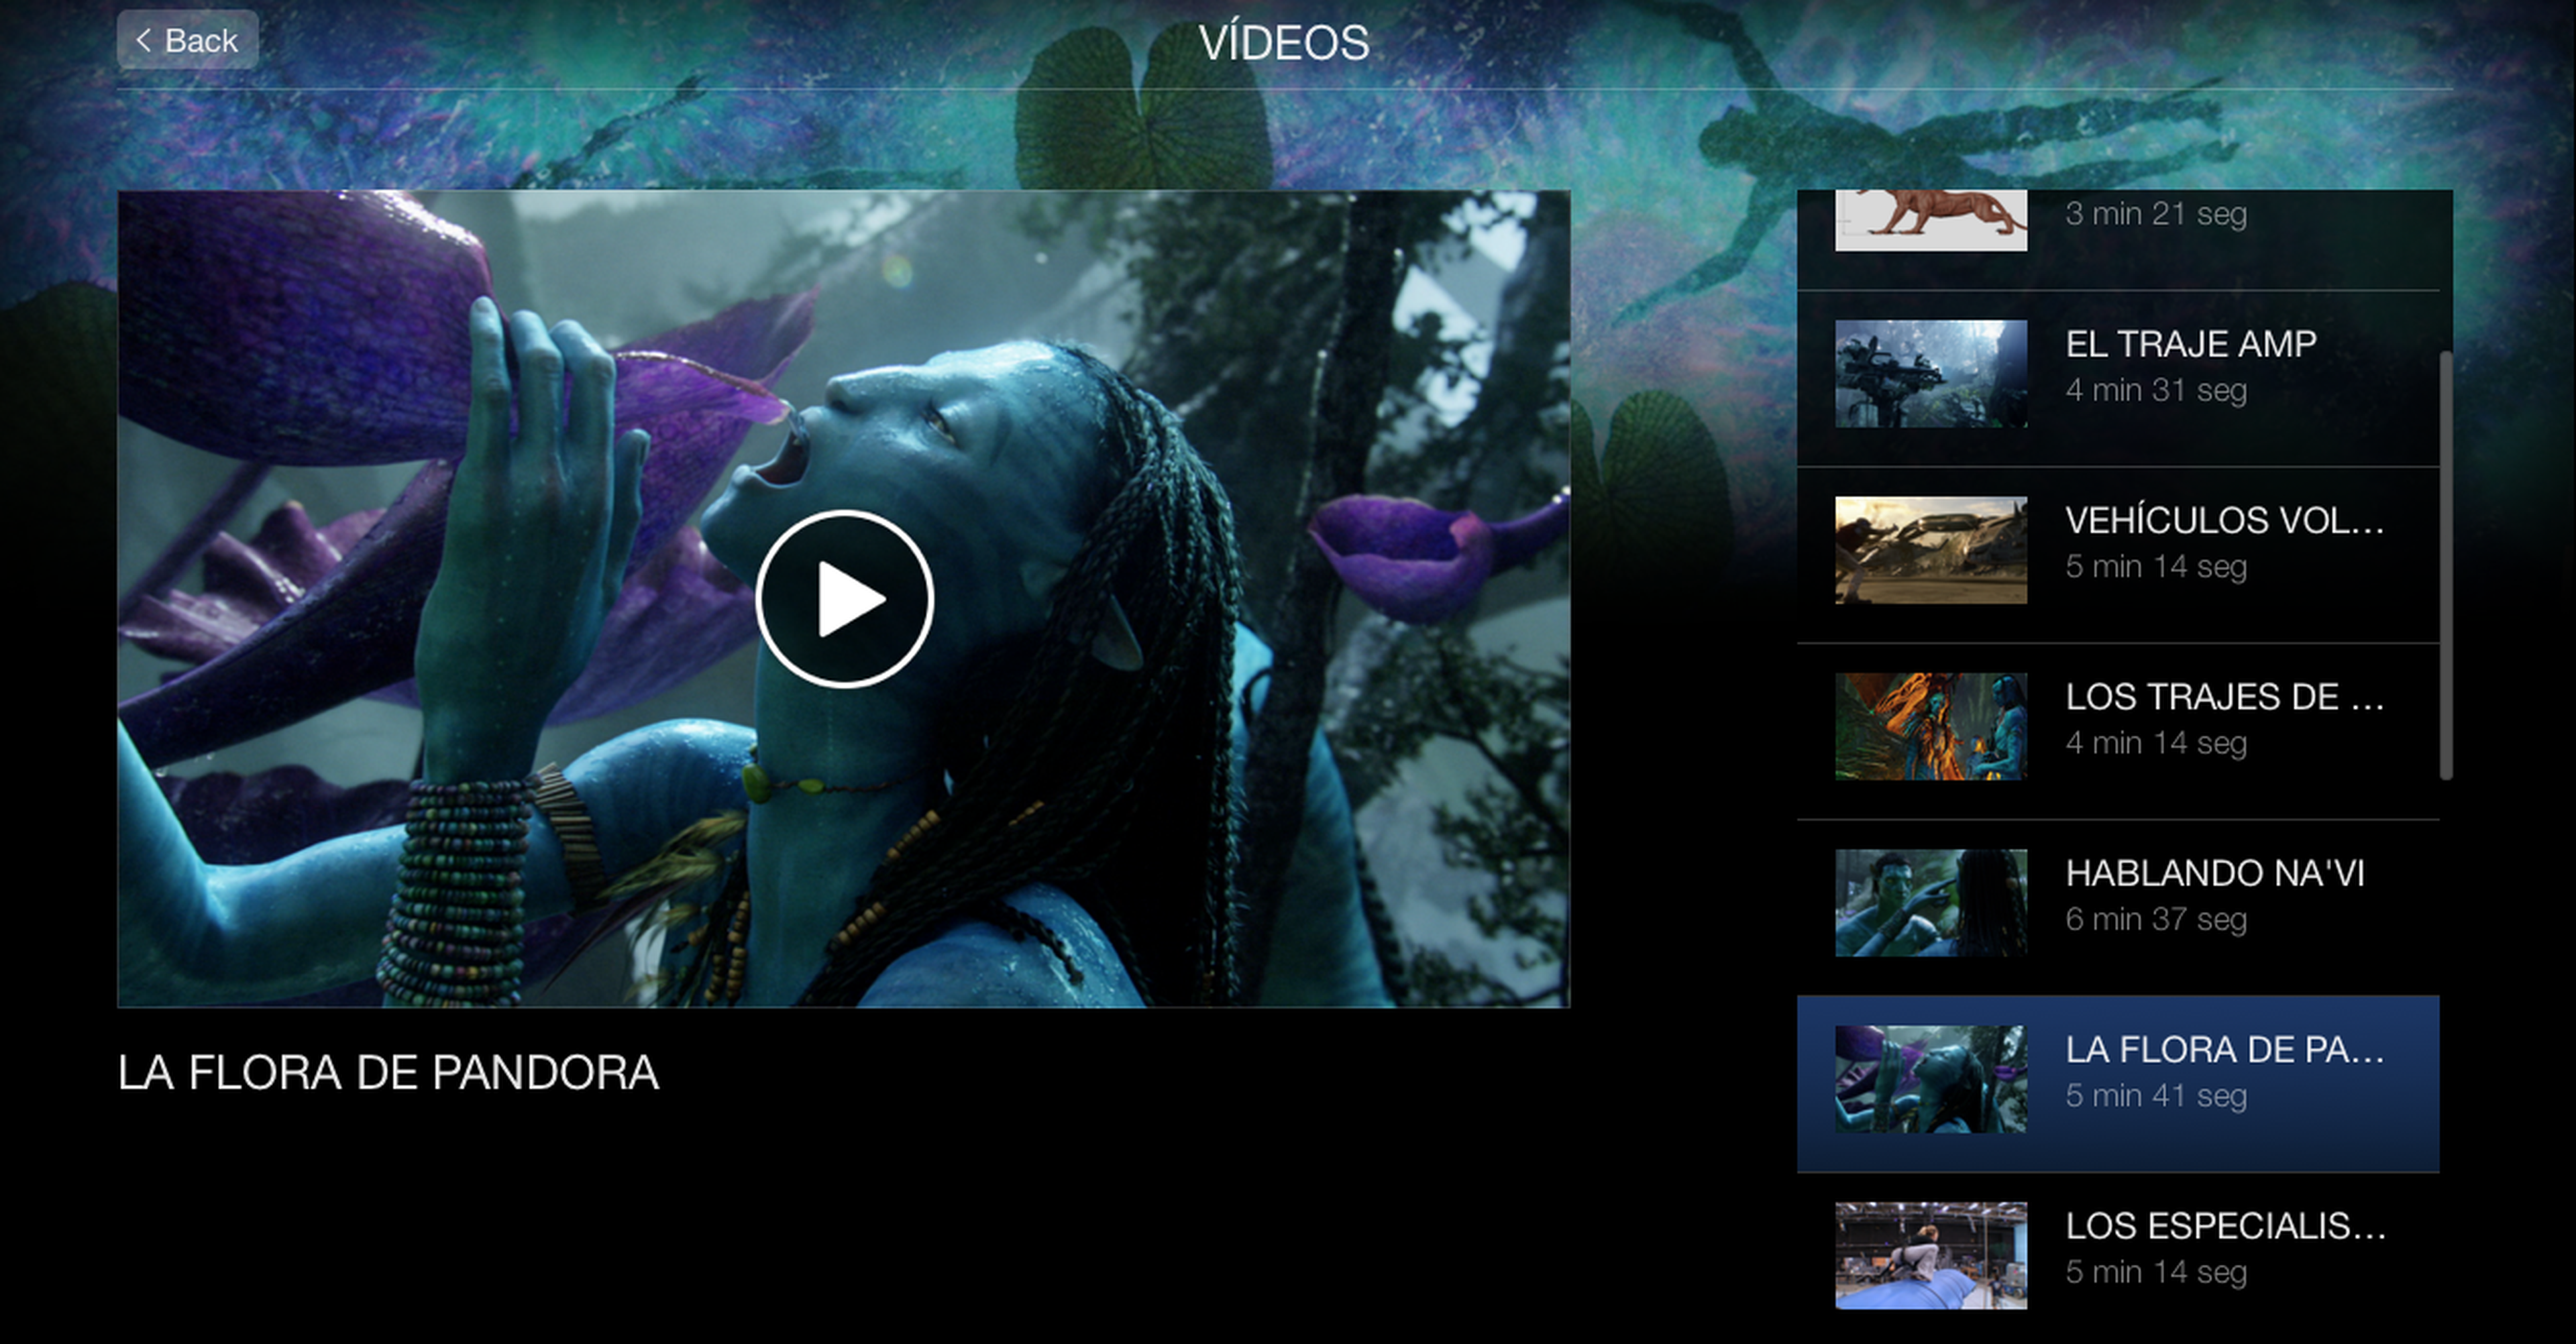 Avatar disponible en Digital HD para regresar a Pandora como nunca